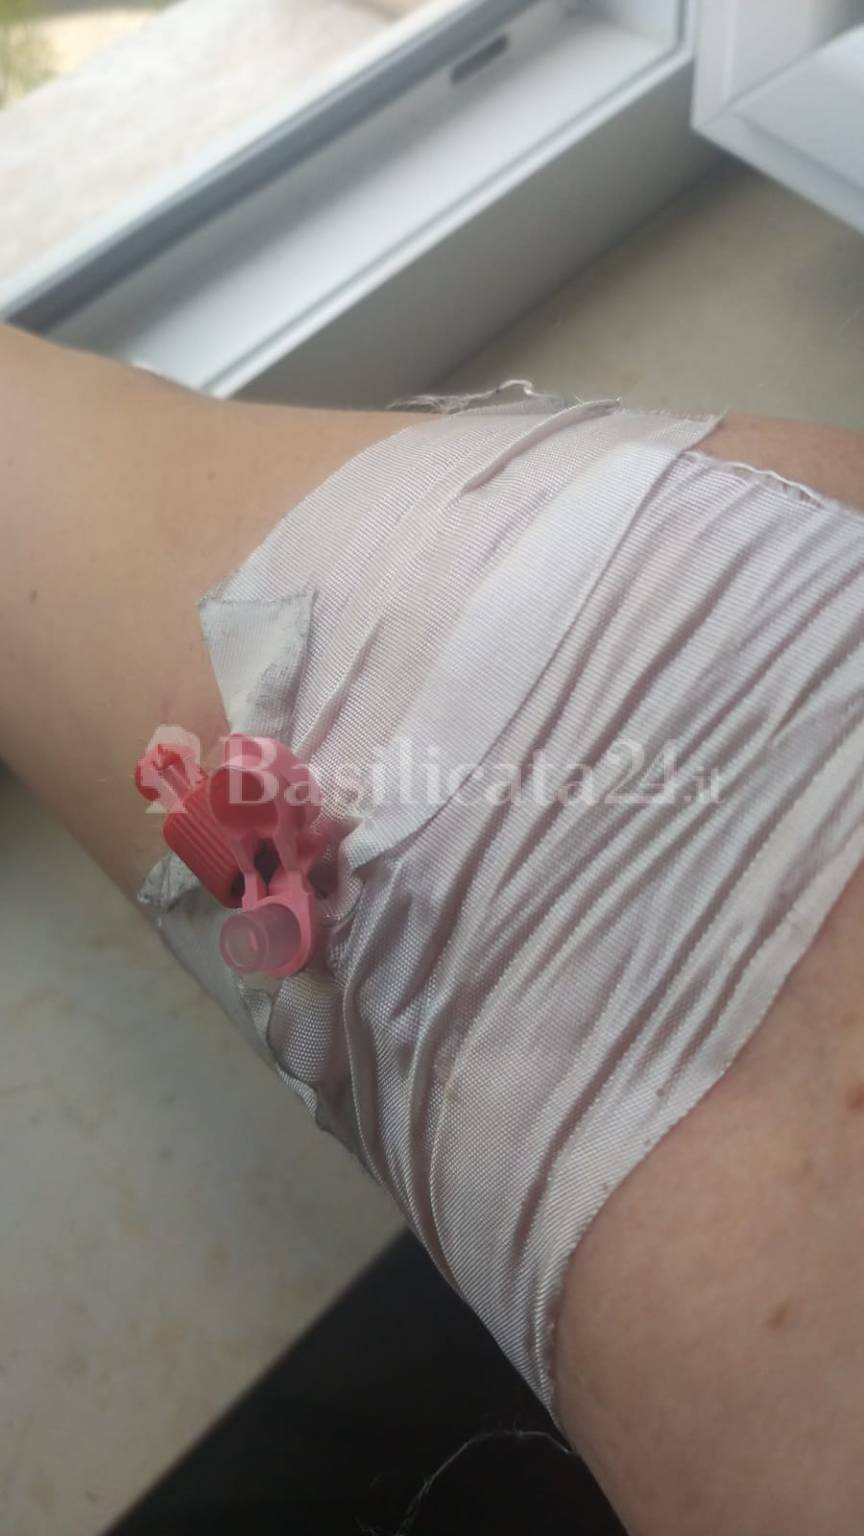 Ospedale San Carlo di Potenza: la dimettono con ago al braccio e sensori sul corpo